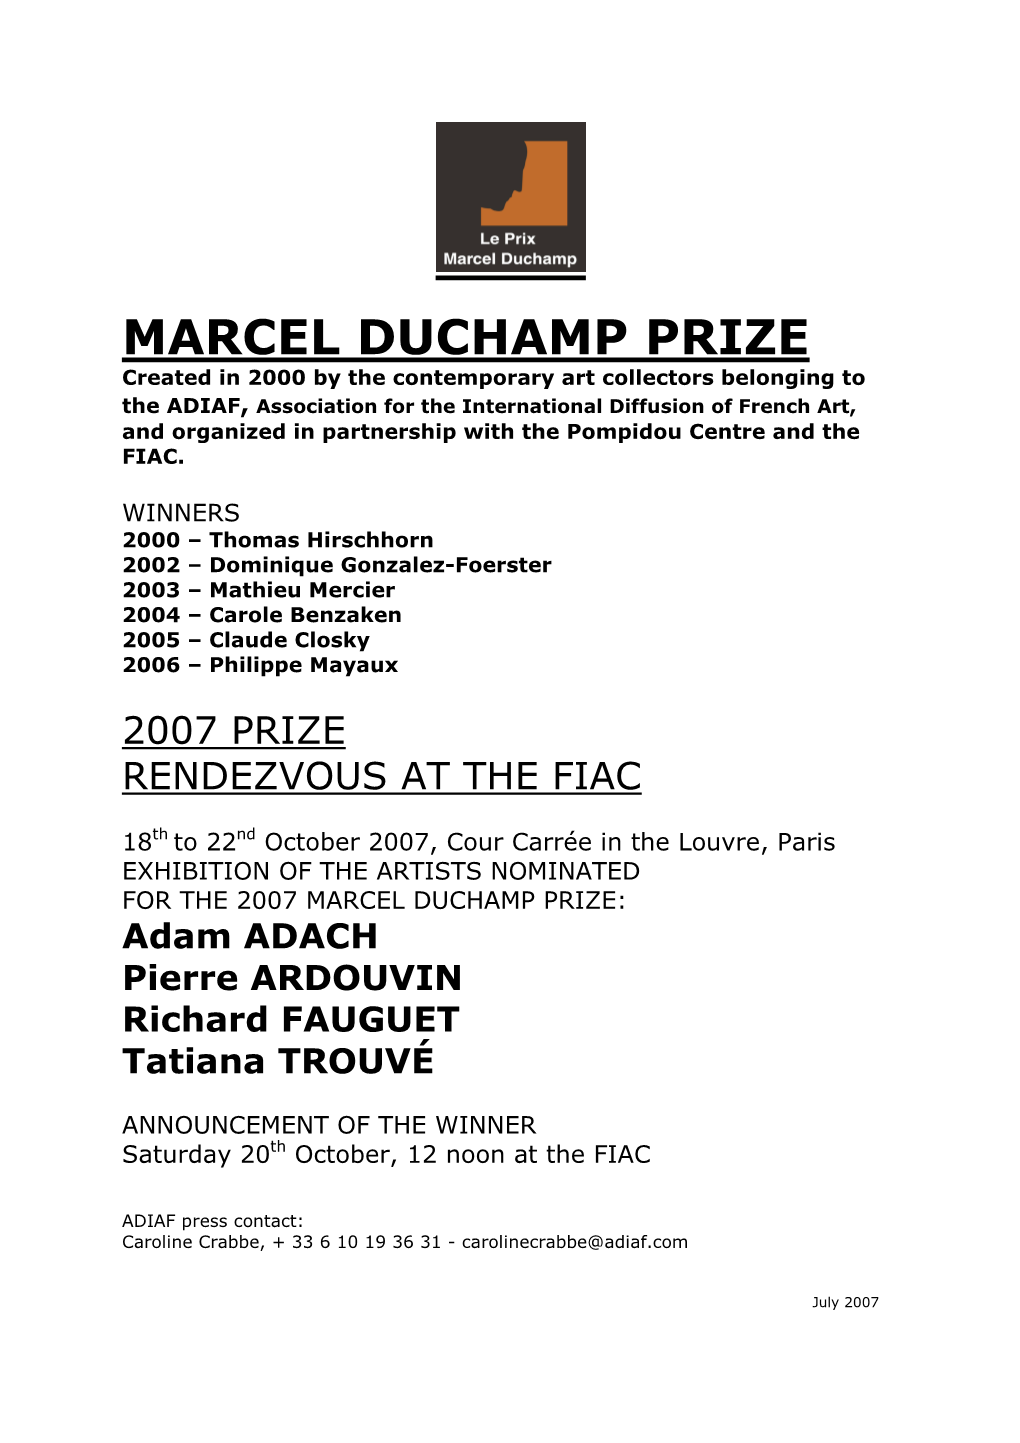 THE 2007 MARCEL DUCHAMP PRIZE: Adam ADACH Pierre ARDOUVIN Richard FAUGUET Tatiana TROUVÉ